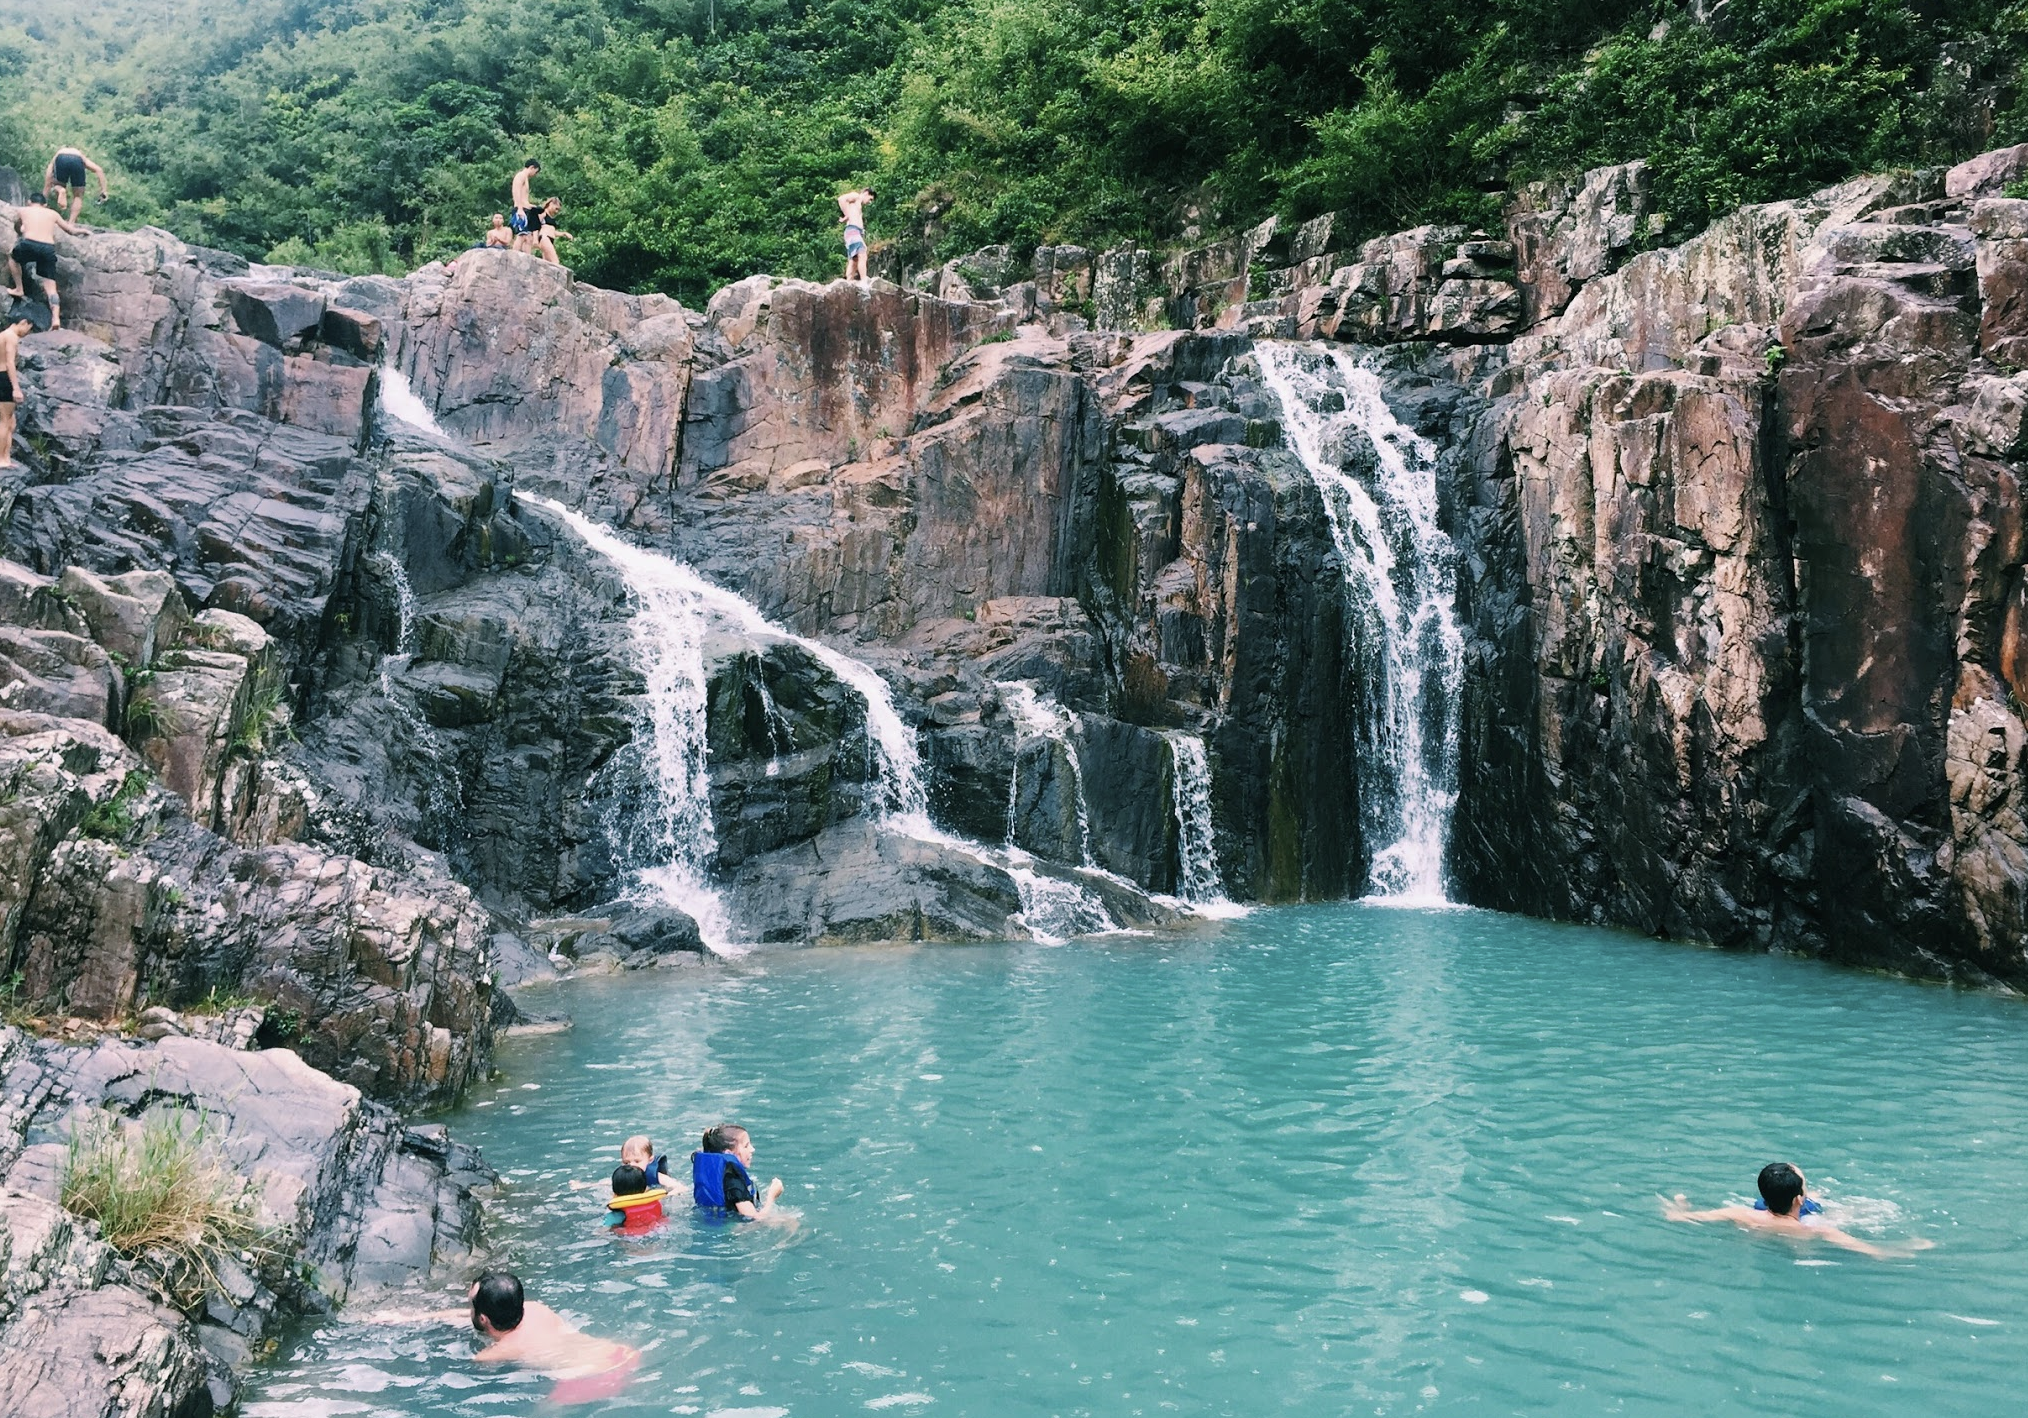 Visiting waterfalls in Hong Kong - Sheung Lok Stream